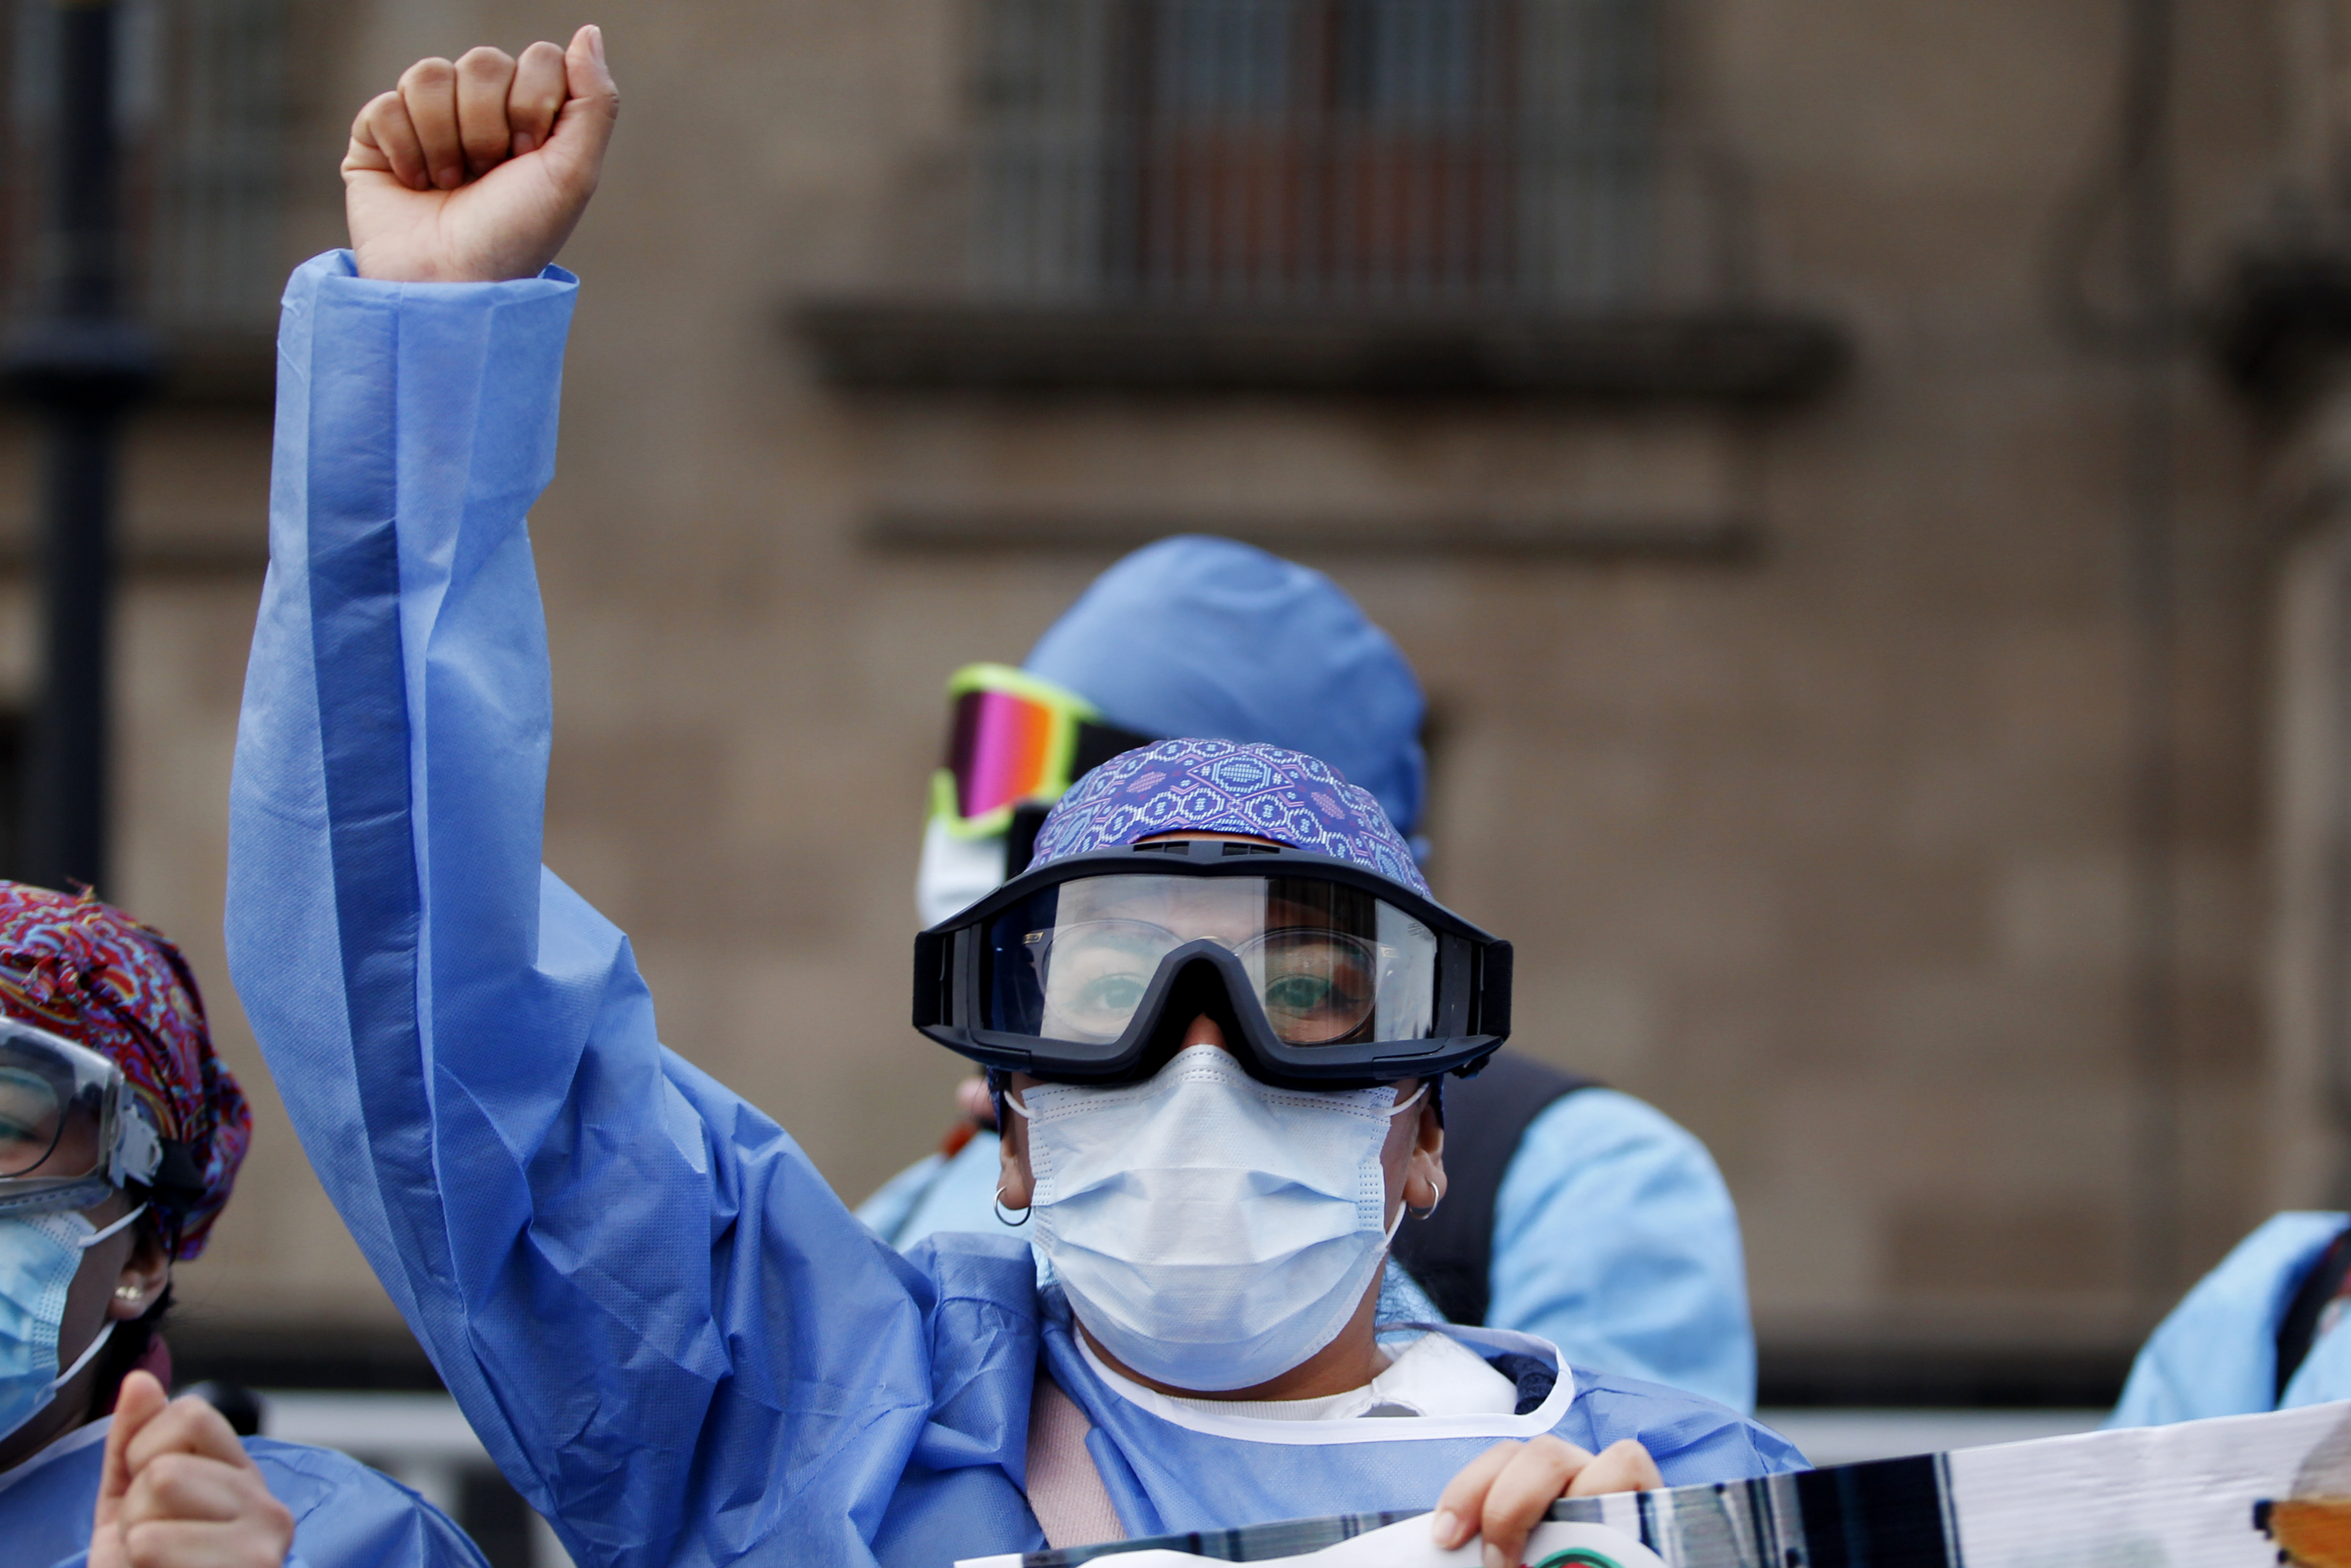 Médicos mexicanos manifestaron su desaprobación ante el anunció de AMLO de contratar médicos cubanos (Foto: Karina Hernández / Infobae)